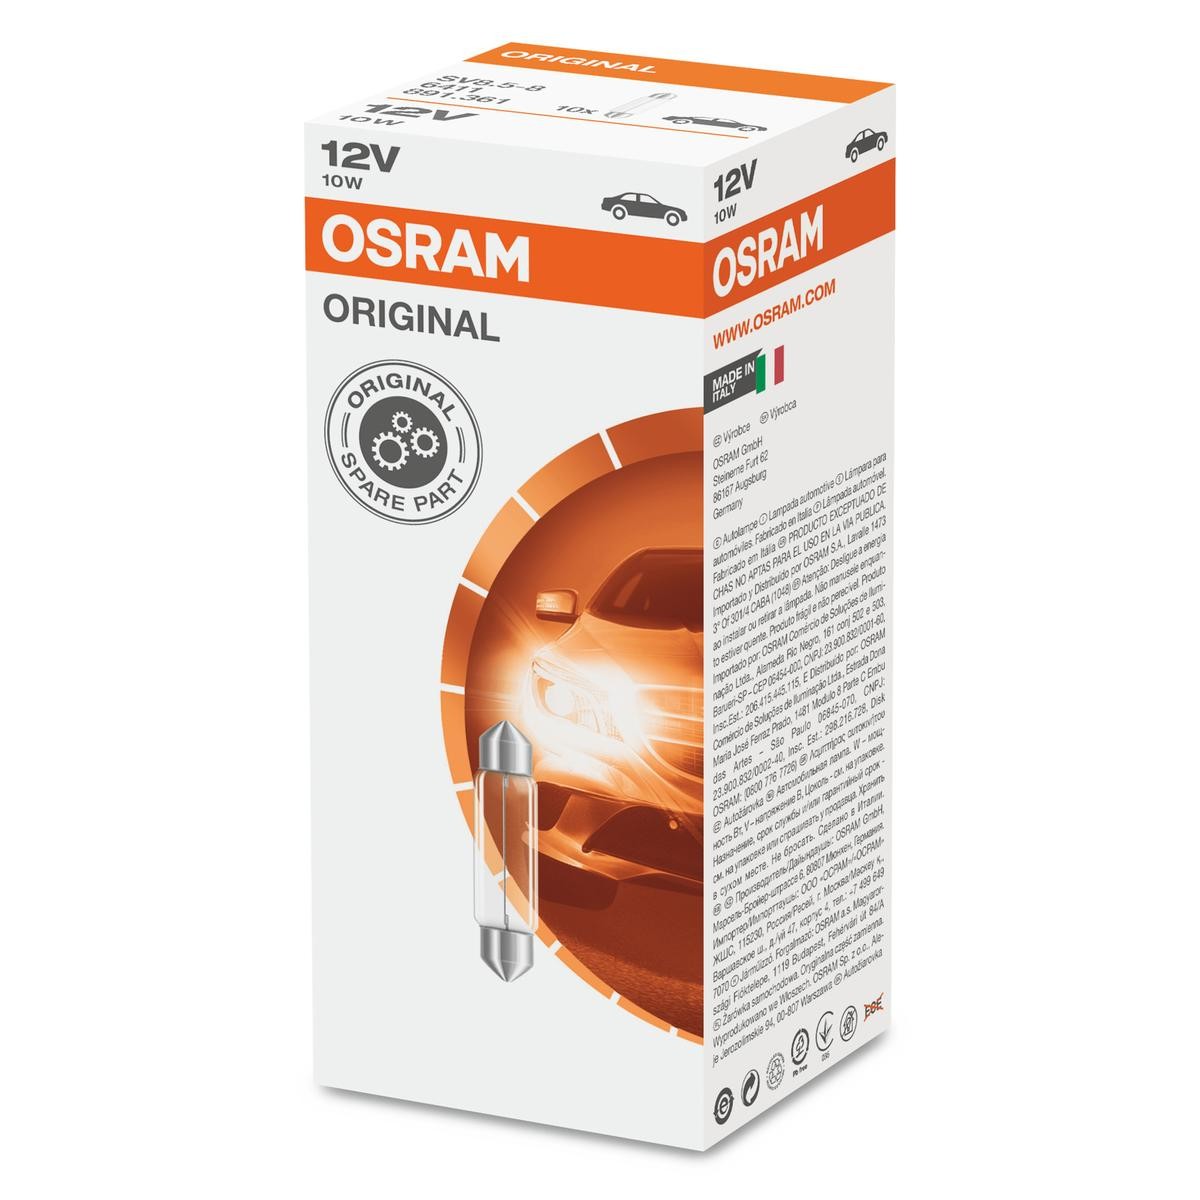 Piaggio ricambi originali OSRAM 6411